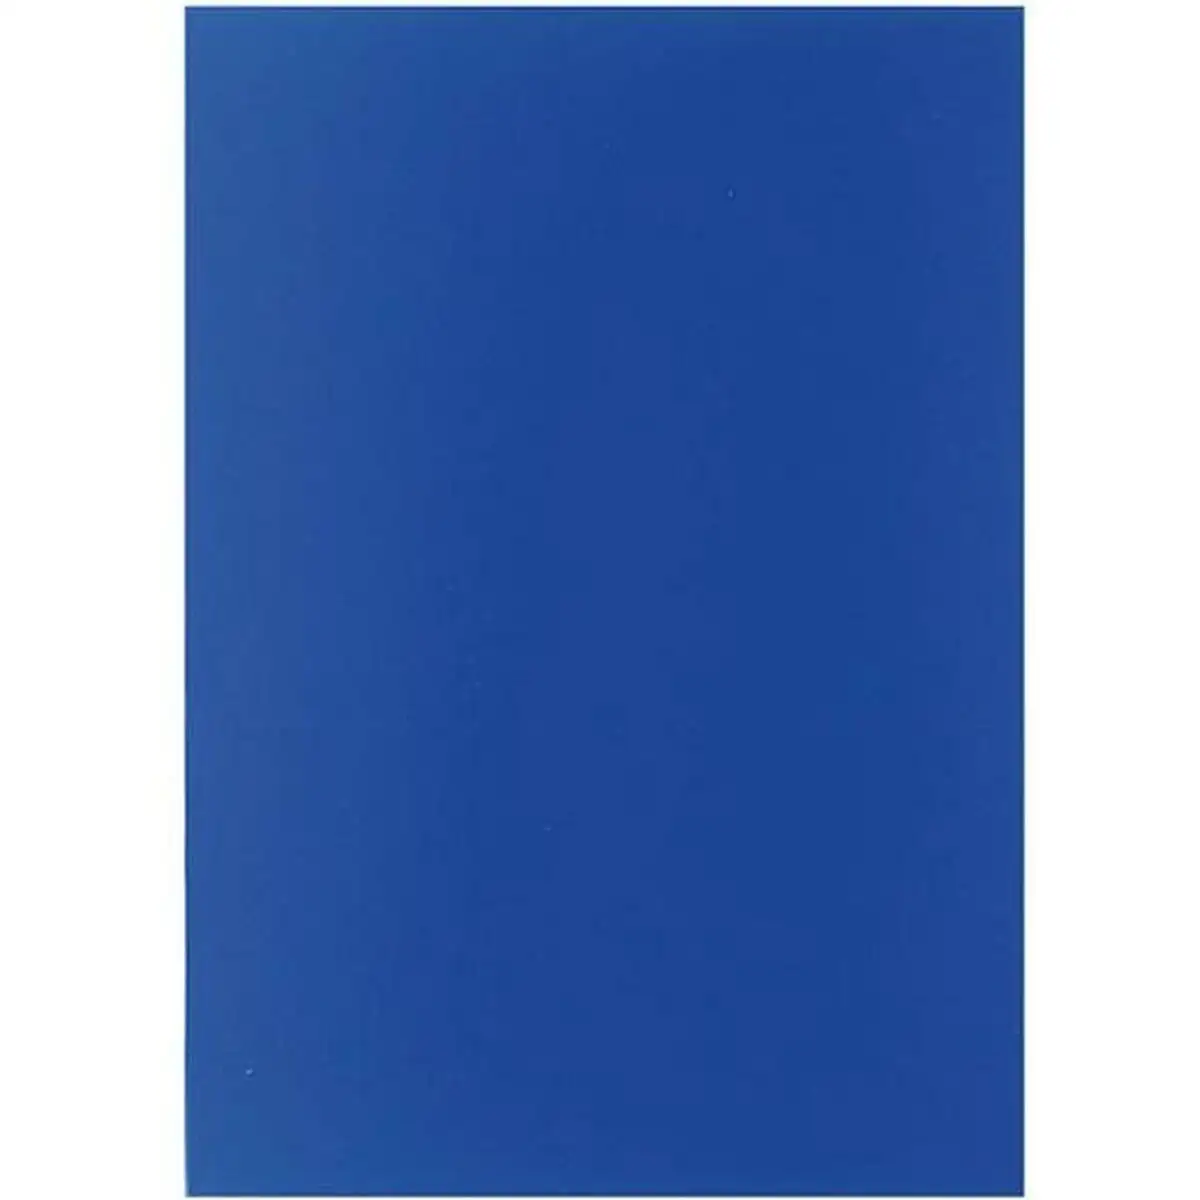 Couvertures de reliure displast bleu a4 polypropylene 50 unites _8273. Bienvenue sur DIAYTAR SENEGAL - Où Chaque Produit a son Charme. Explorez notre sélection minutieuse et trouvez des articles qui vous séduisent et vous inspirent.